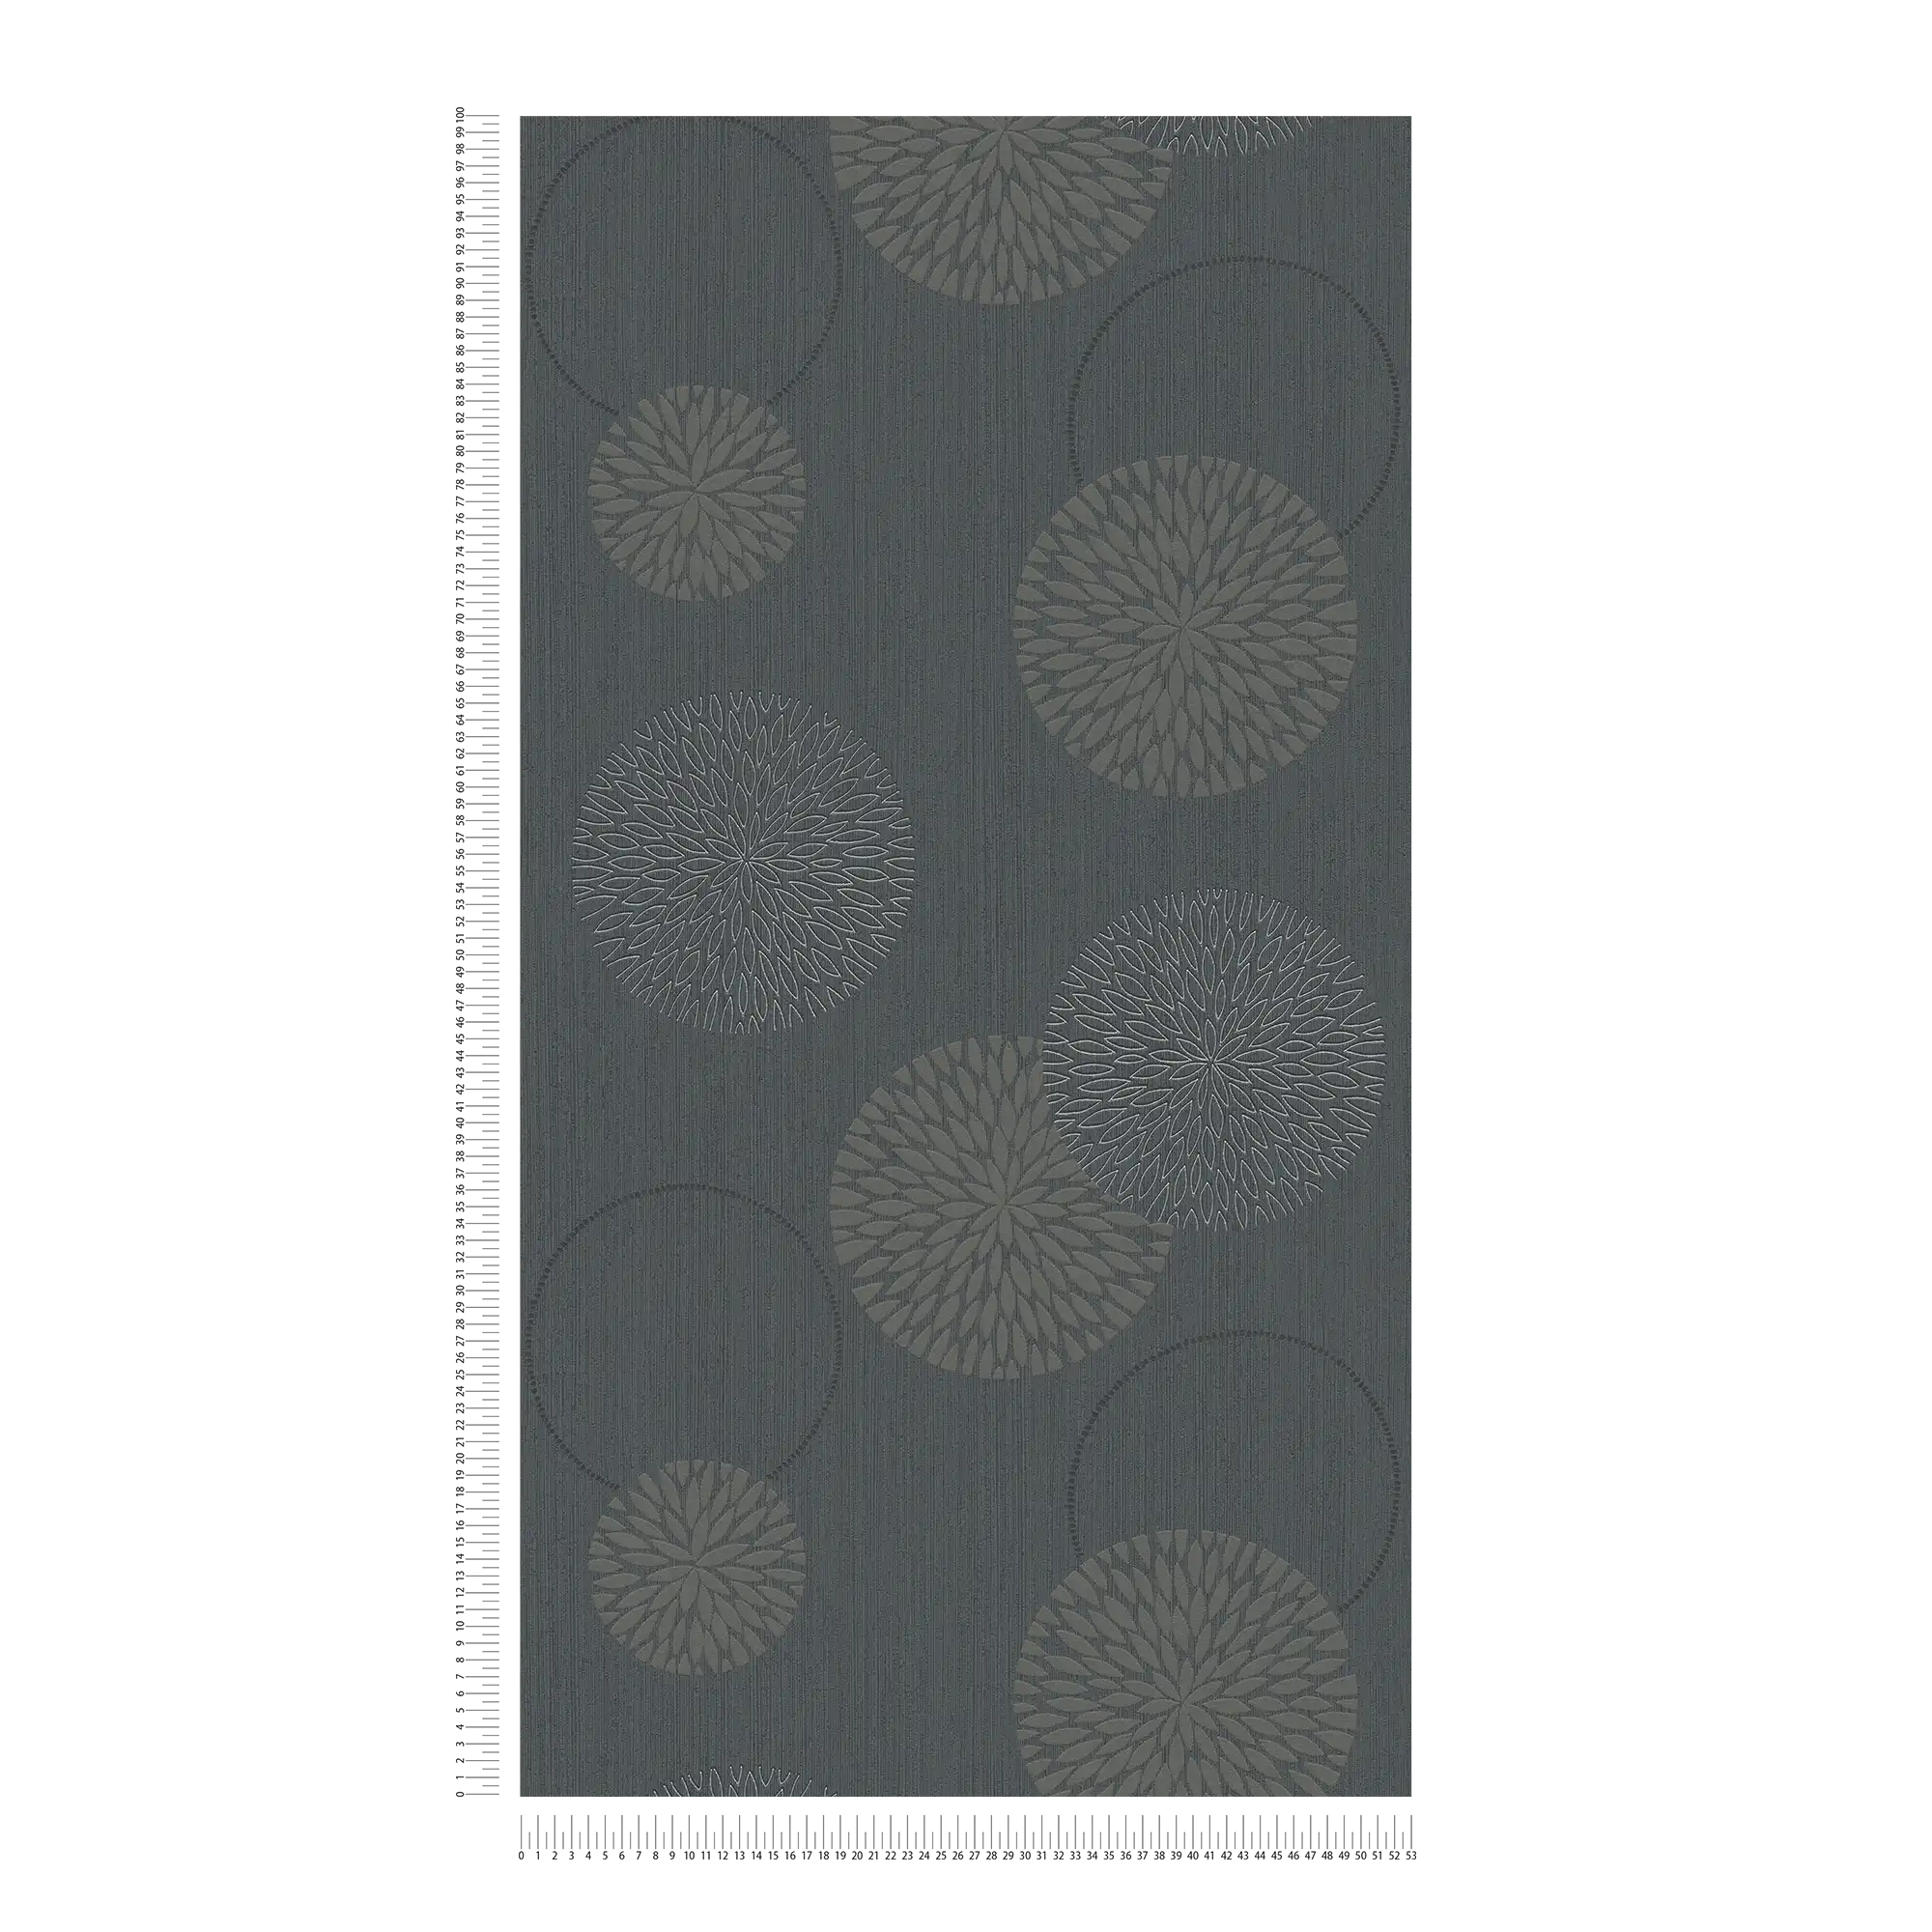             Carta da parati in tessuto non tessuto con fiori astratti - grigio, nero
        